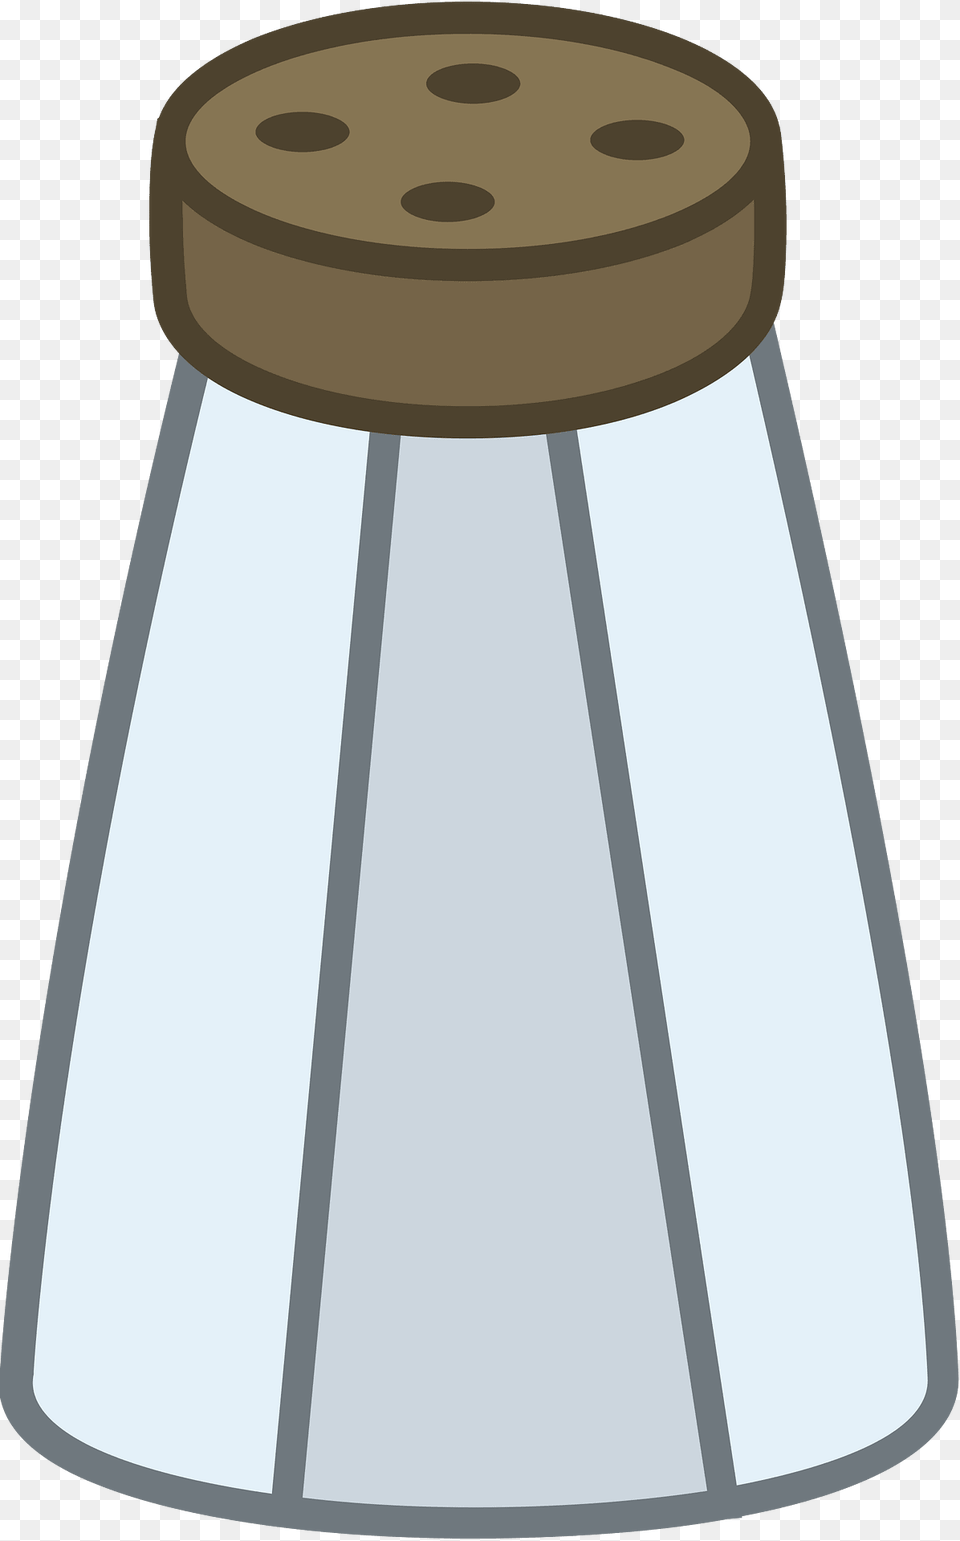 Salt Shaker Clipart, Lamp, Lampshade, Lighting, Jar Png Image